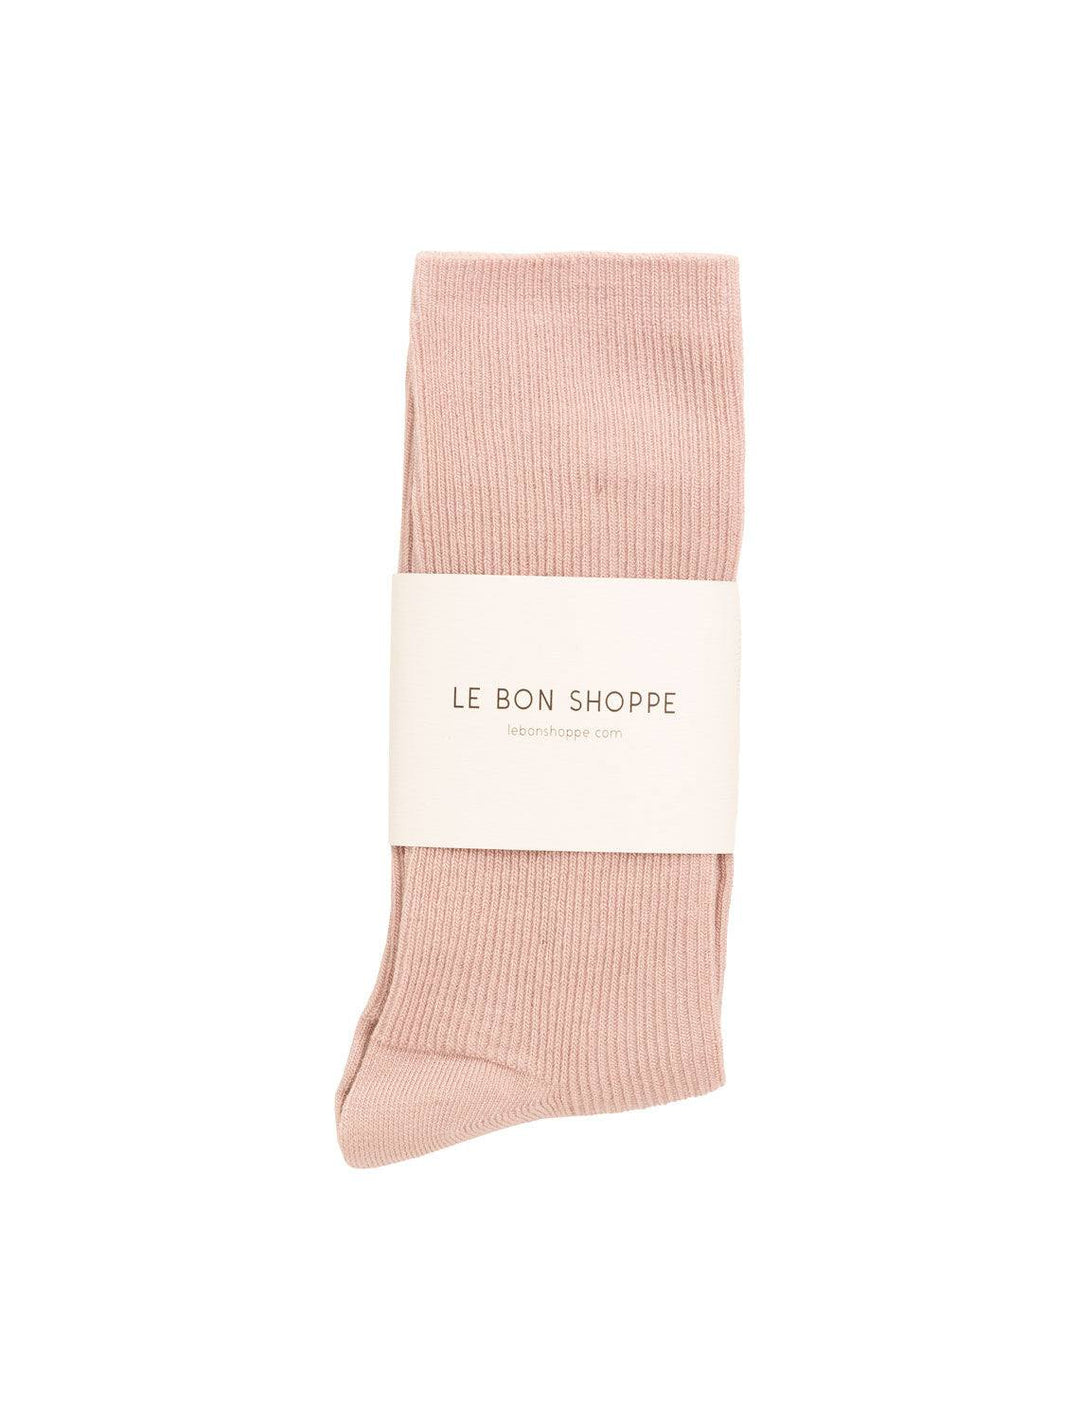 Le Bon Shoppe trouser socks in rosewater - Twigs